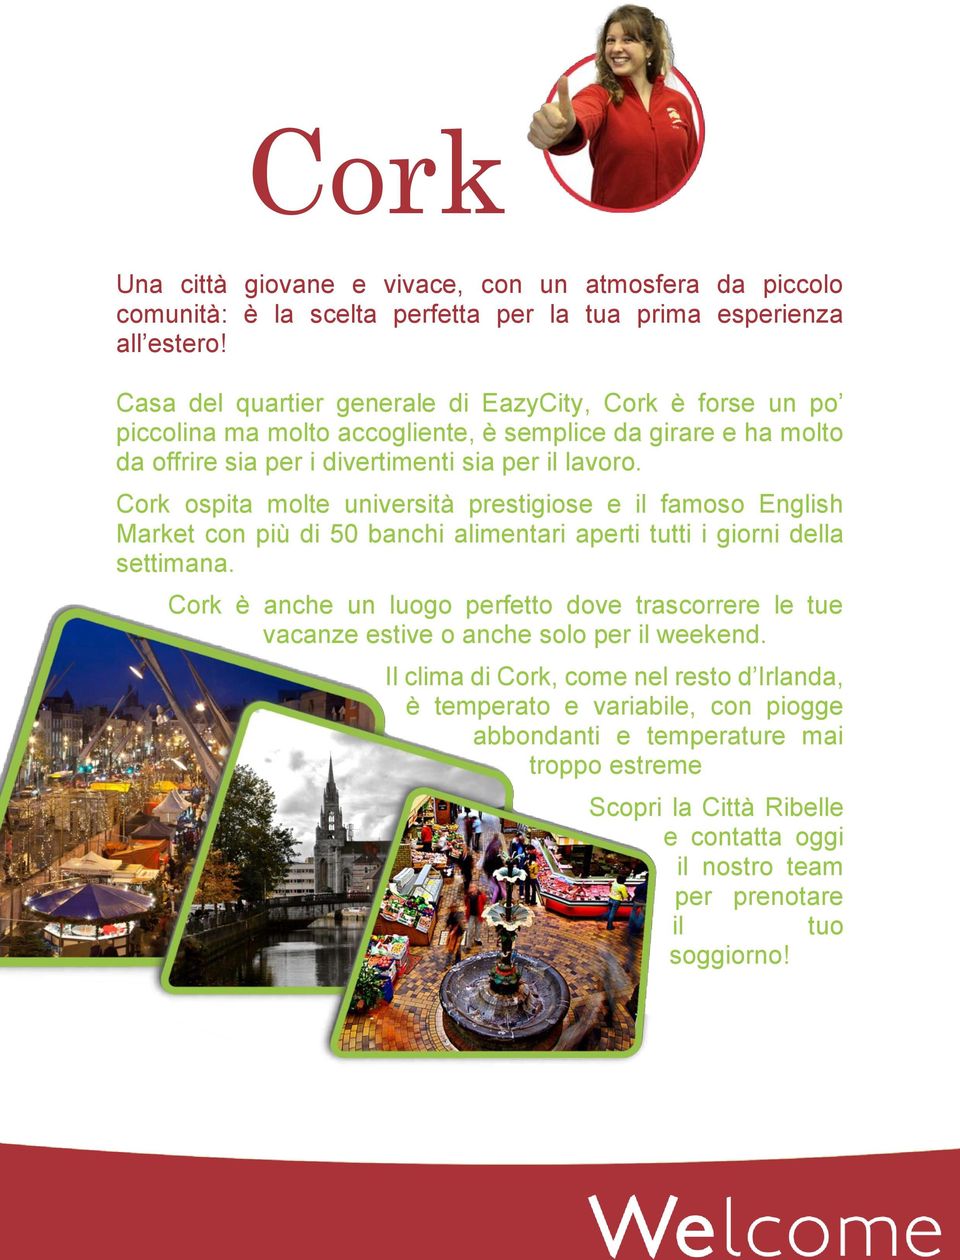 Cork ospita molte università prestigiose e il famoso English Market con più di 50 banchi alimentari aperti tutti i giorni della settimana.